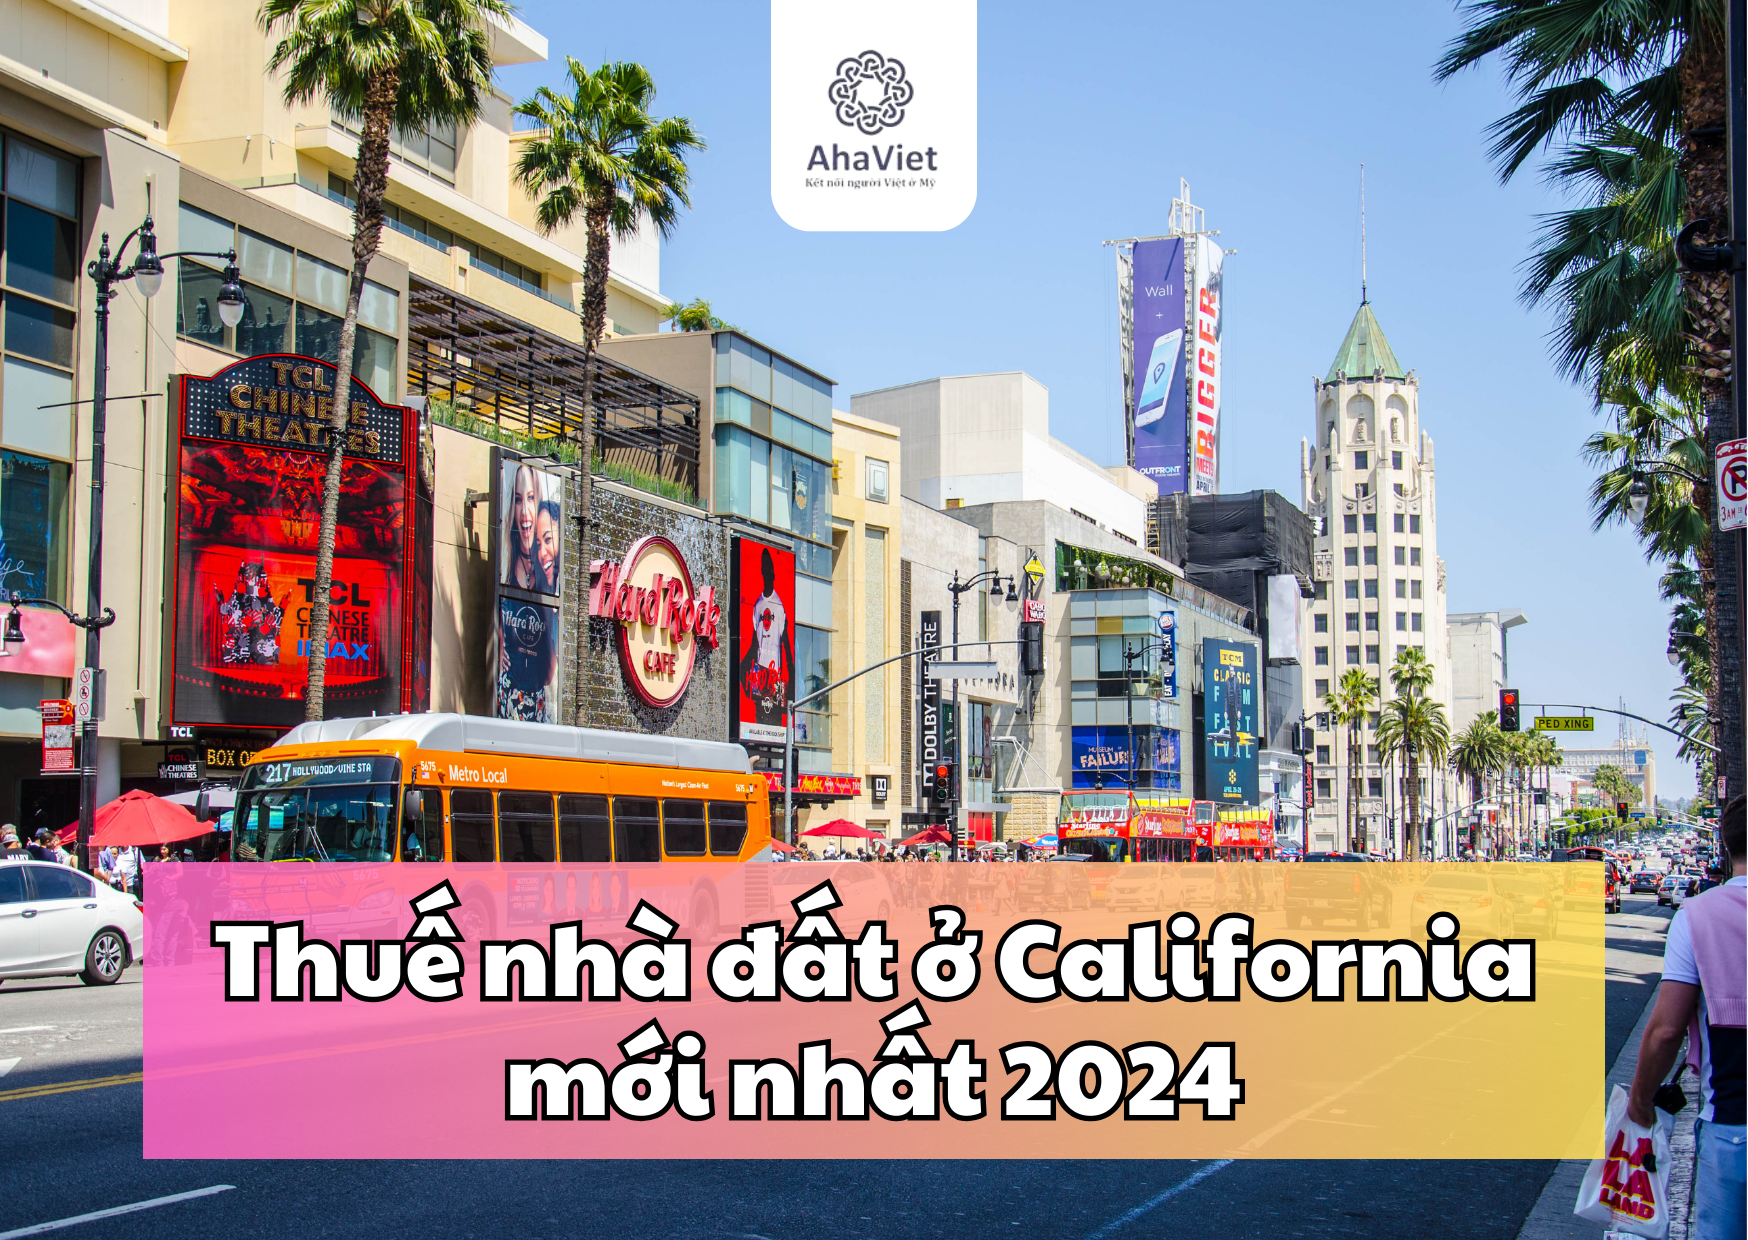 THUÊ NHÀ ĐẤT Ở CALIFORNIA MỚI NHẤT 2024